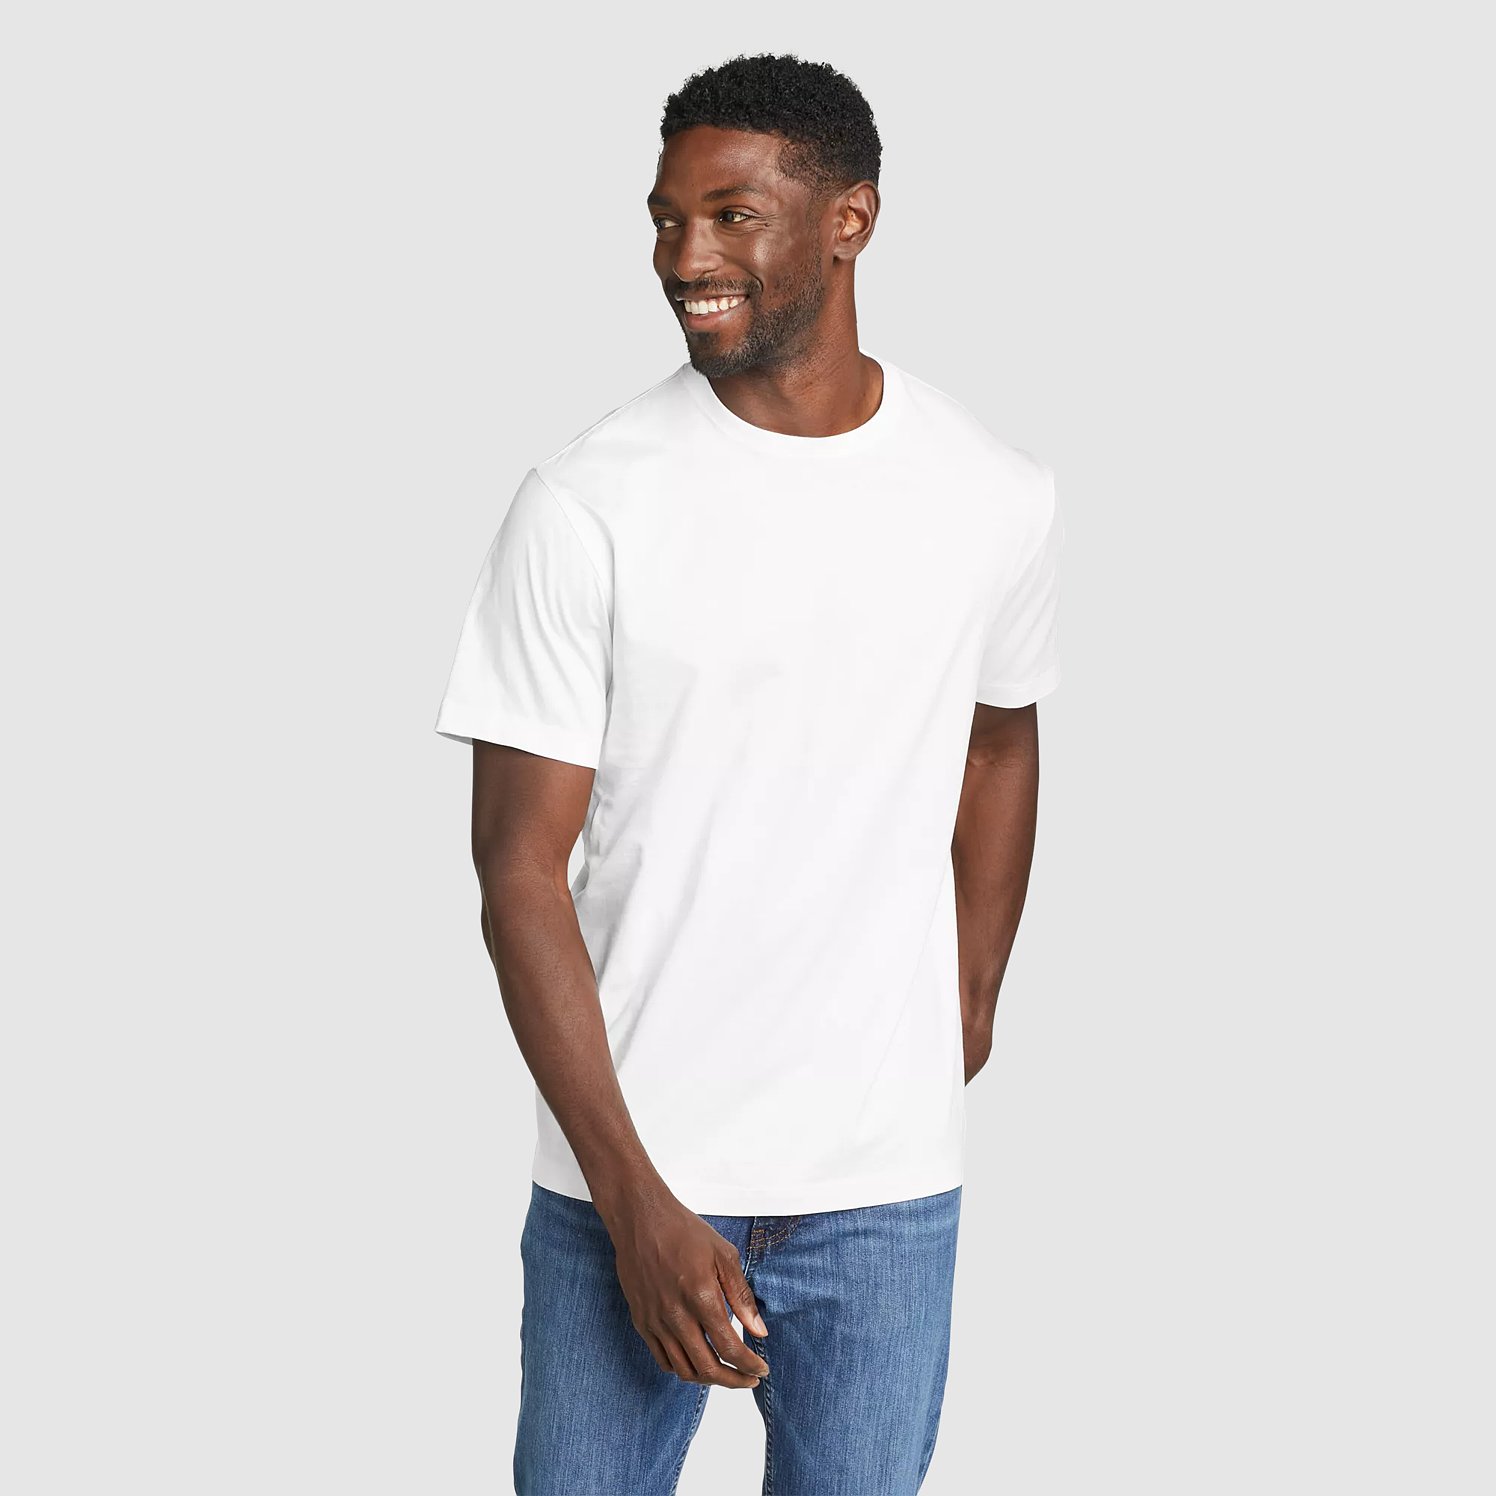 Eddie Bauer Men's Classic Wash 100% Cotton Short-Sleeve Slim T-Shirt - White - Size XXL